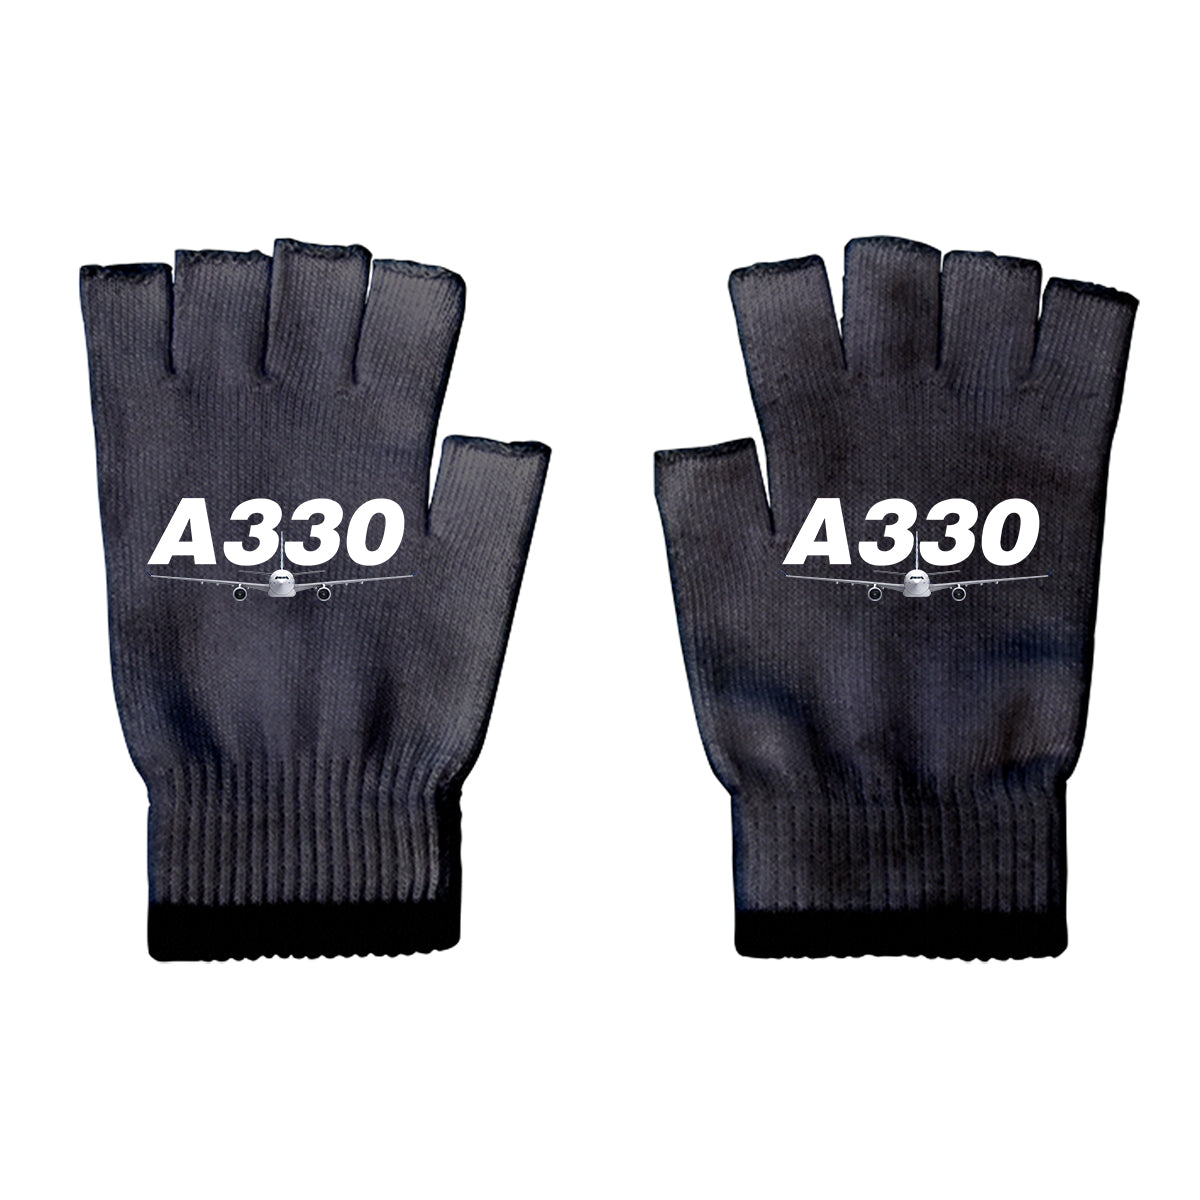 Super Airbus A330 Designed Cut Gloves